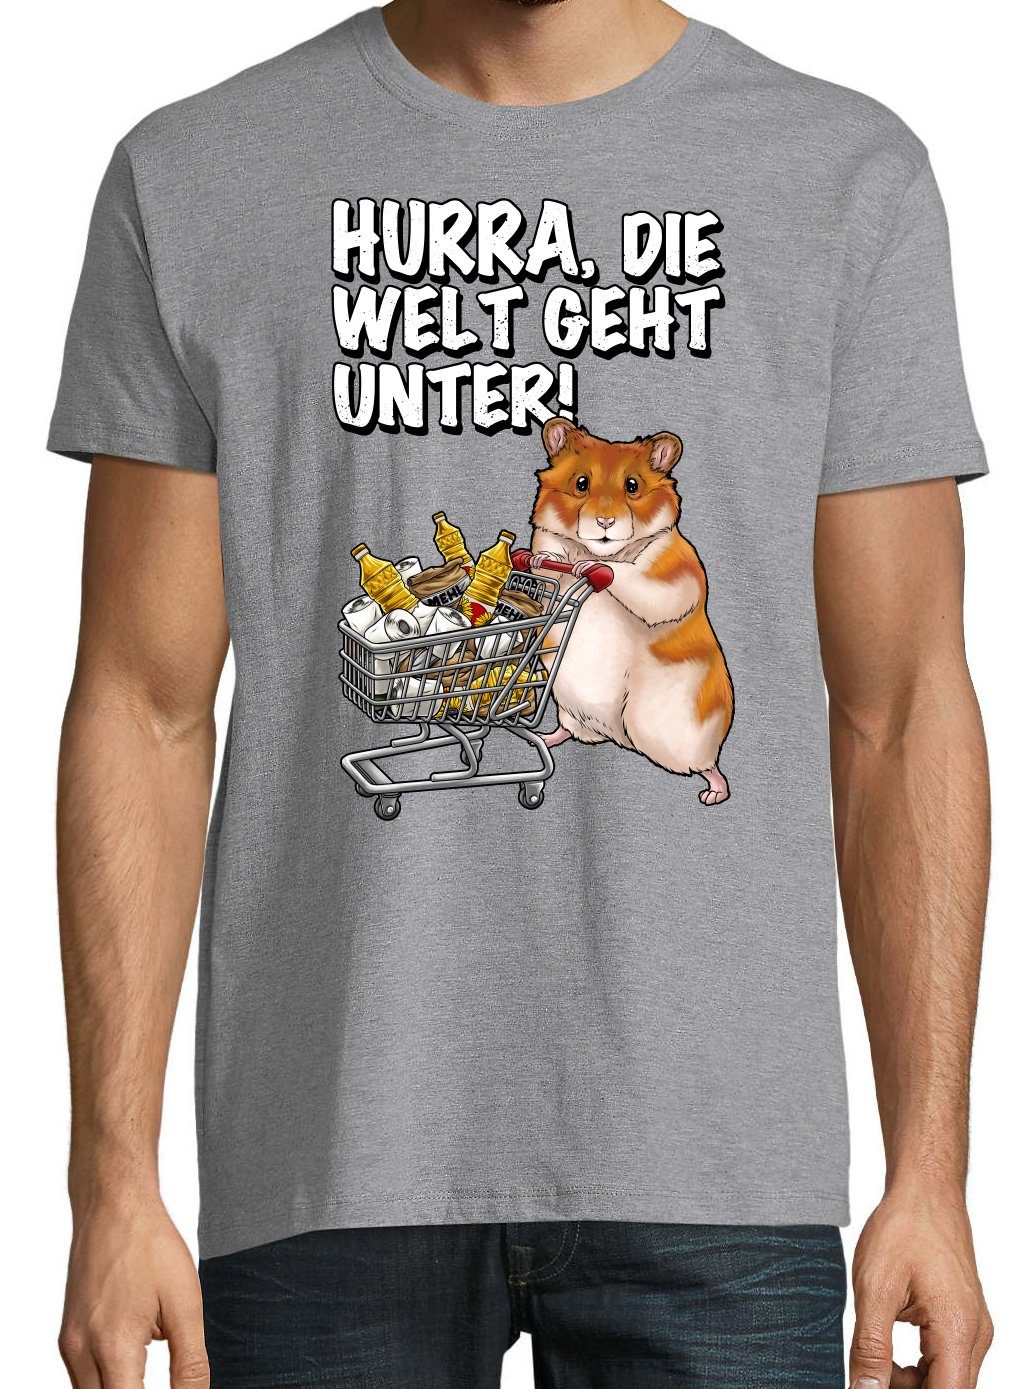 mit Designz Grau Geht Unter Print Spruch Print-Shirt Herren Youth T-Shirt Hurra Welt Die Hamster lustigem